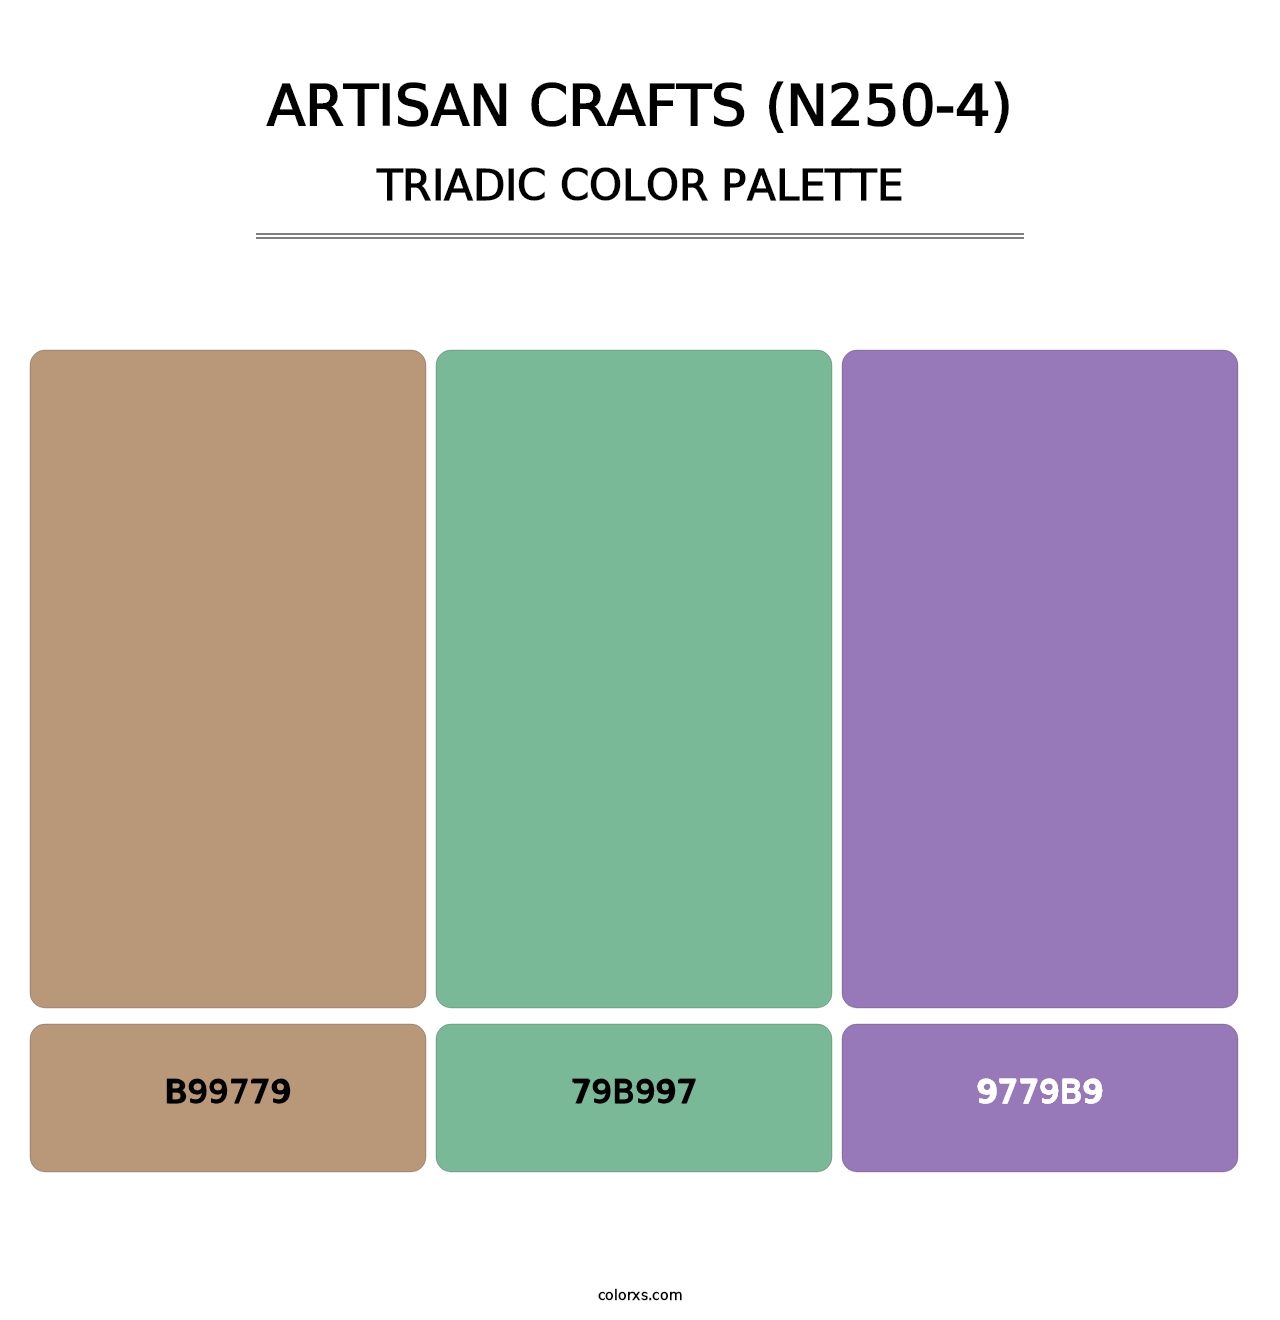 Artisan Crafts (N250-4) - Triadic Color Palette